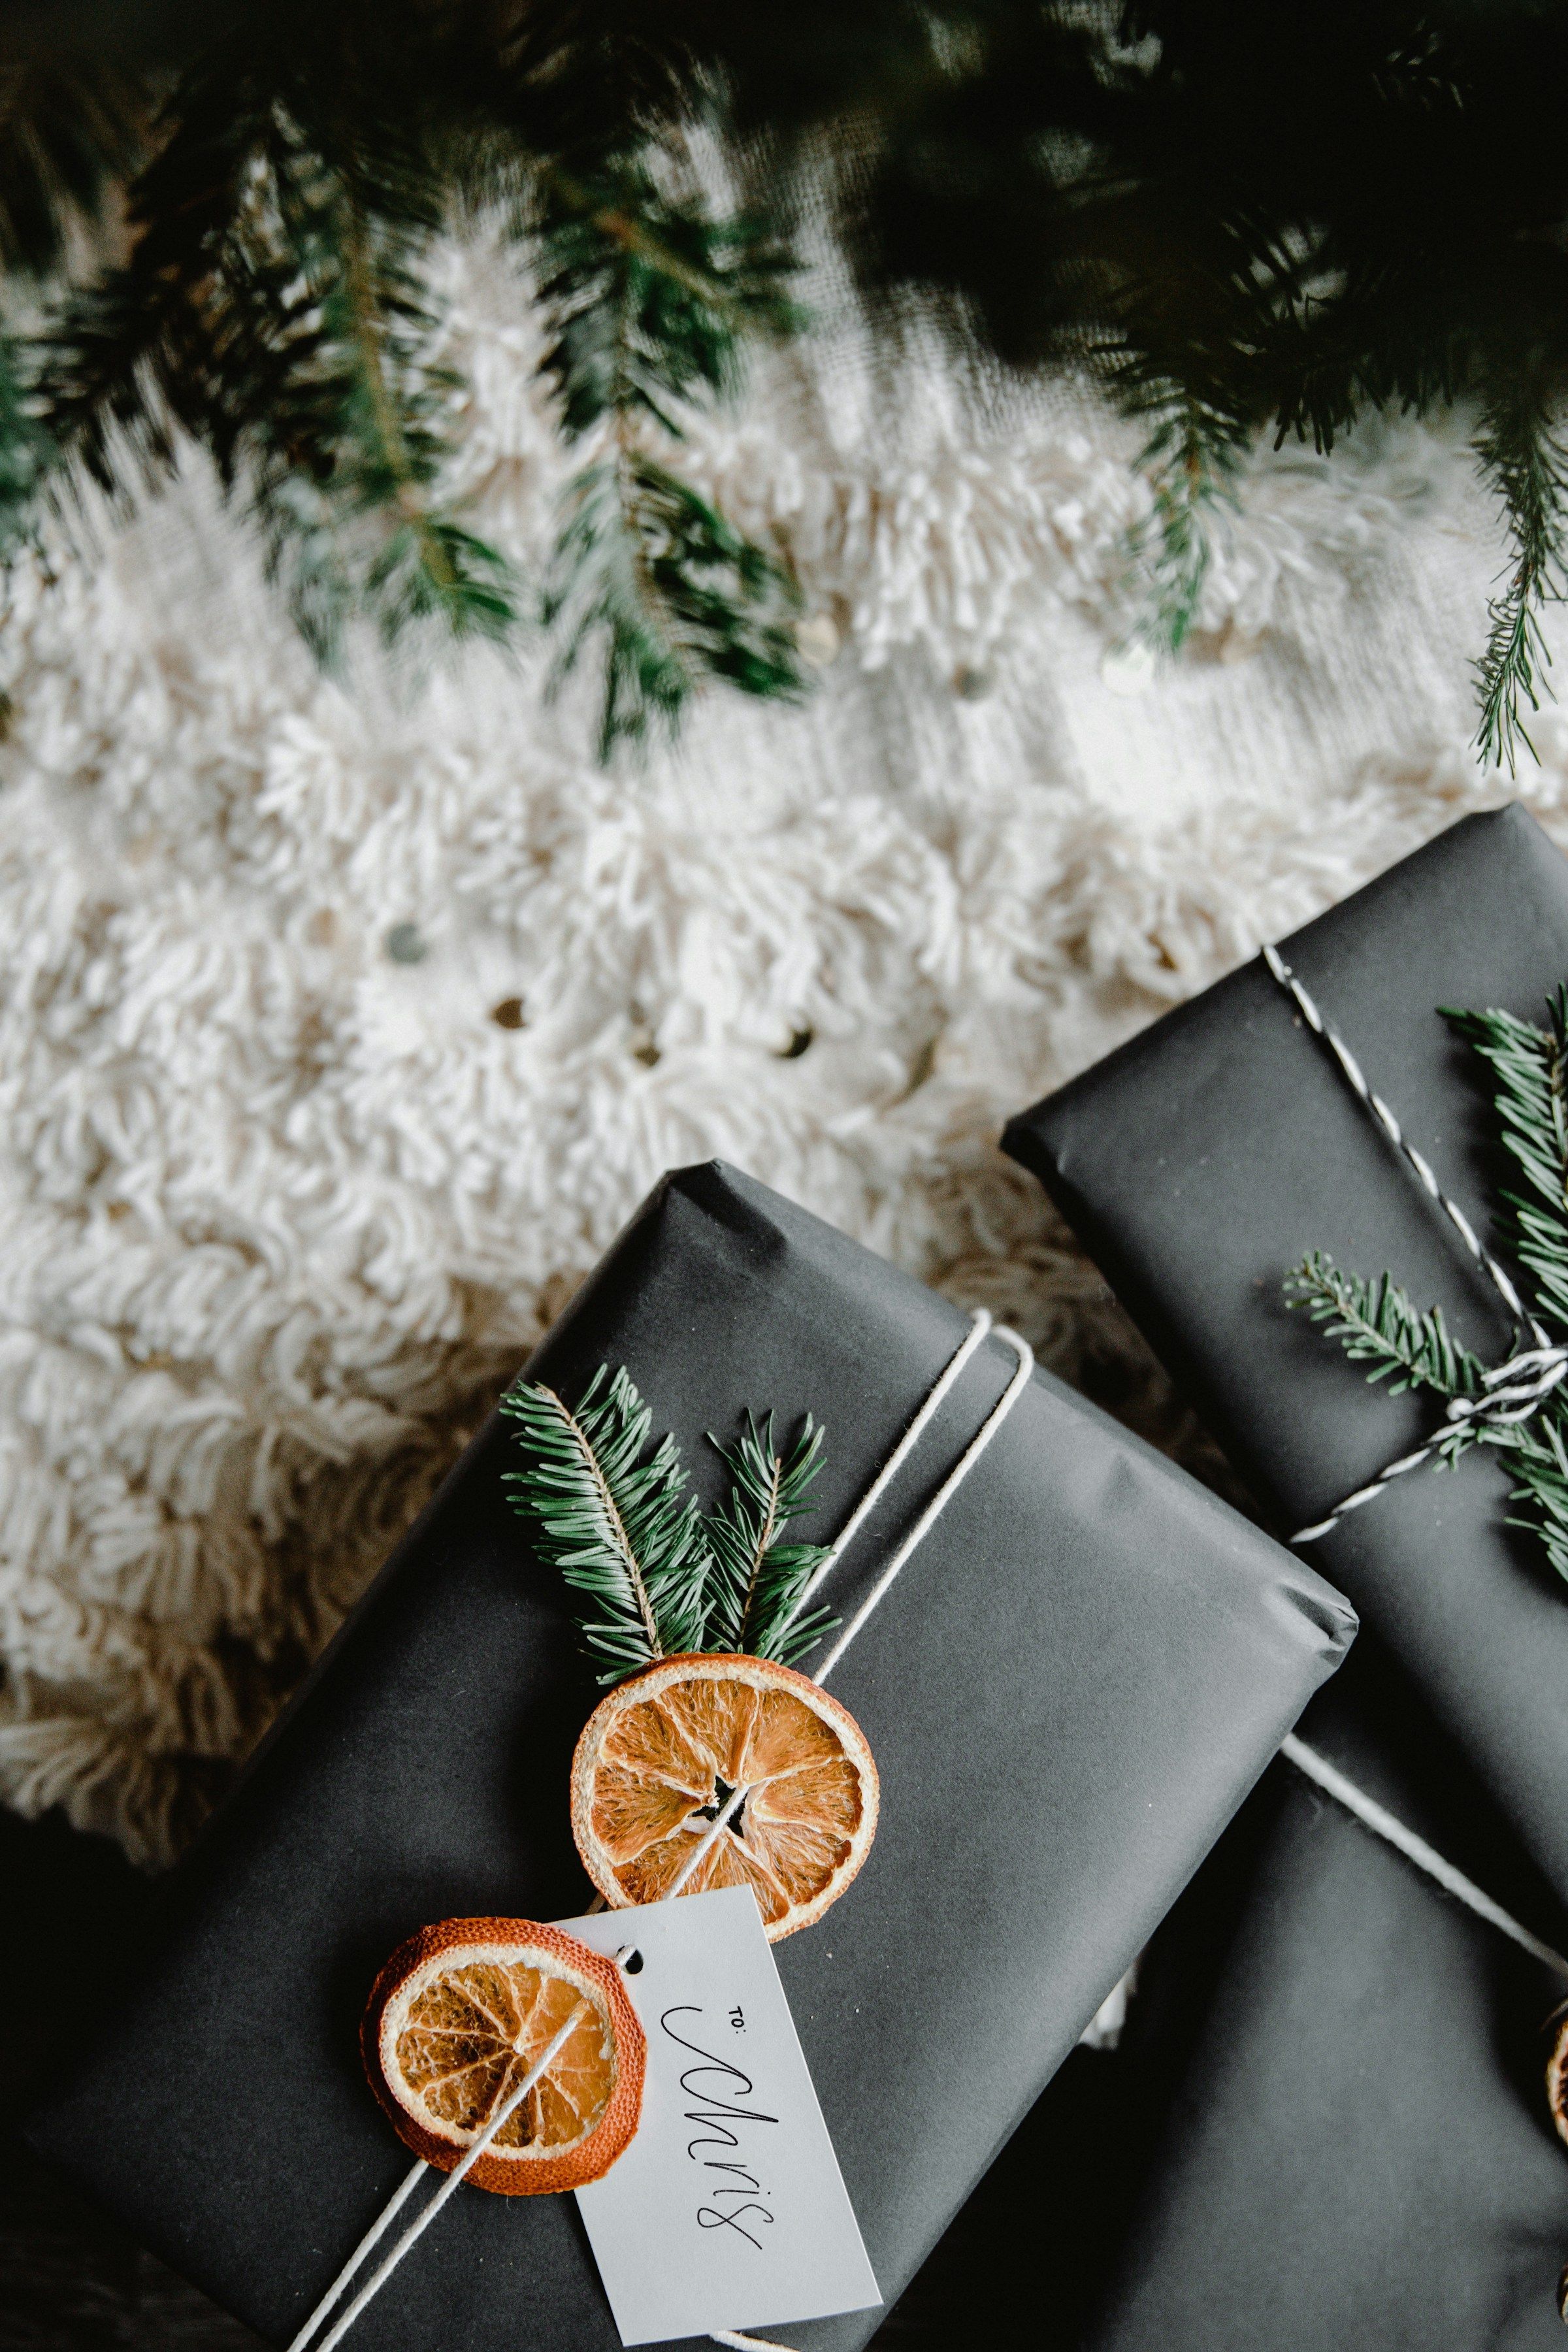 Guía de regalos Kion Home: 7 ideas para regalar esta Navidad